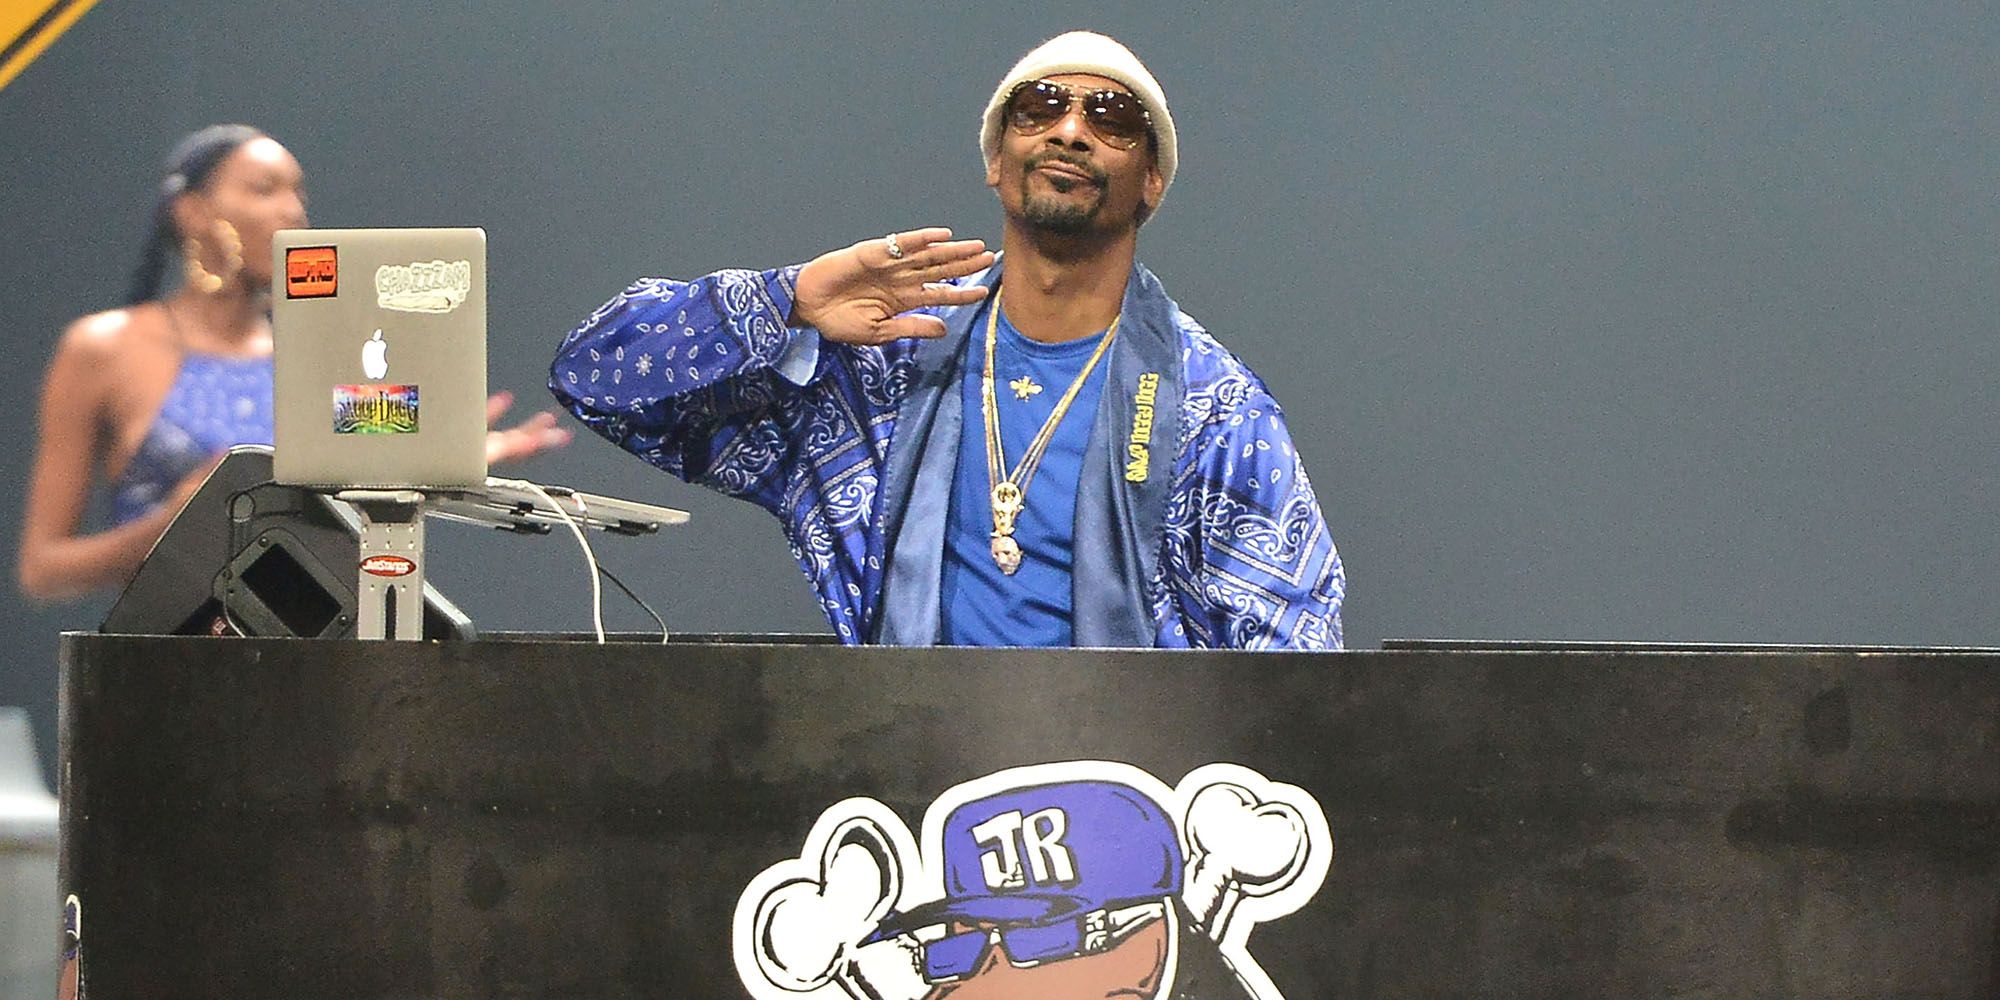 Snoop Dogg x Joyrich Fashion Show - Snoop Dogg x Joyrich Fashion